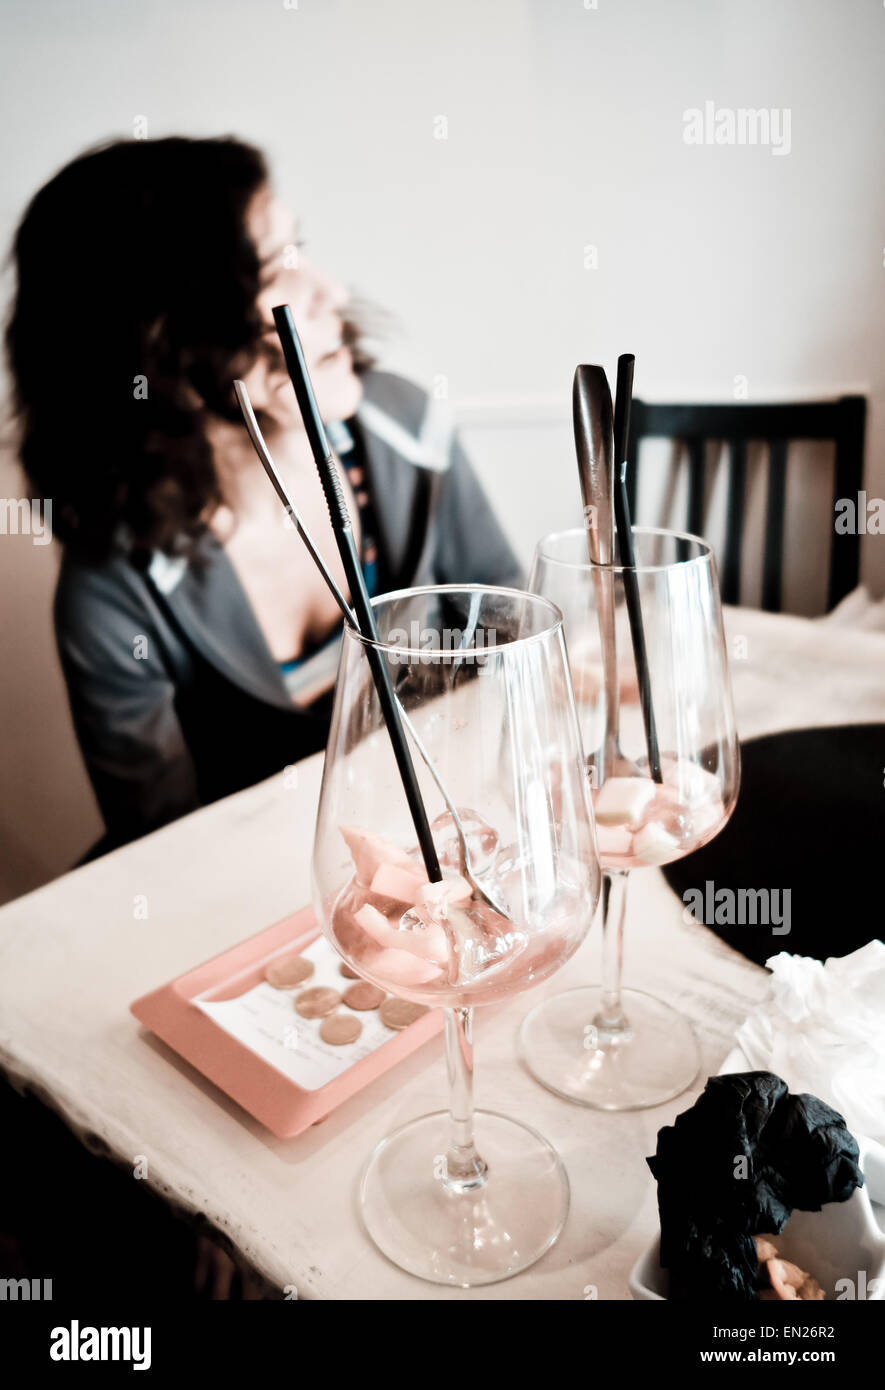 Femme au bar parler, deux verres vides de Sangria avant-plan, avec facture payée à côté, l'Espagne. Banque D'Images